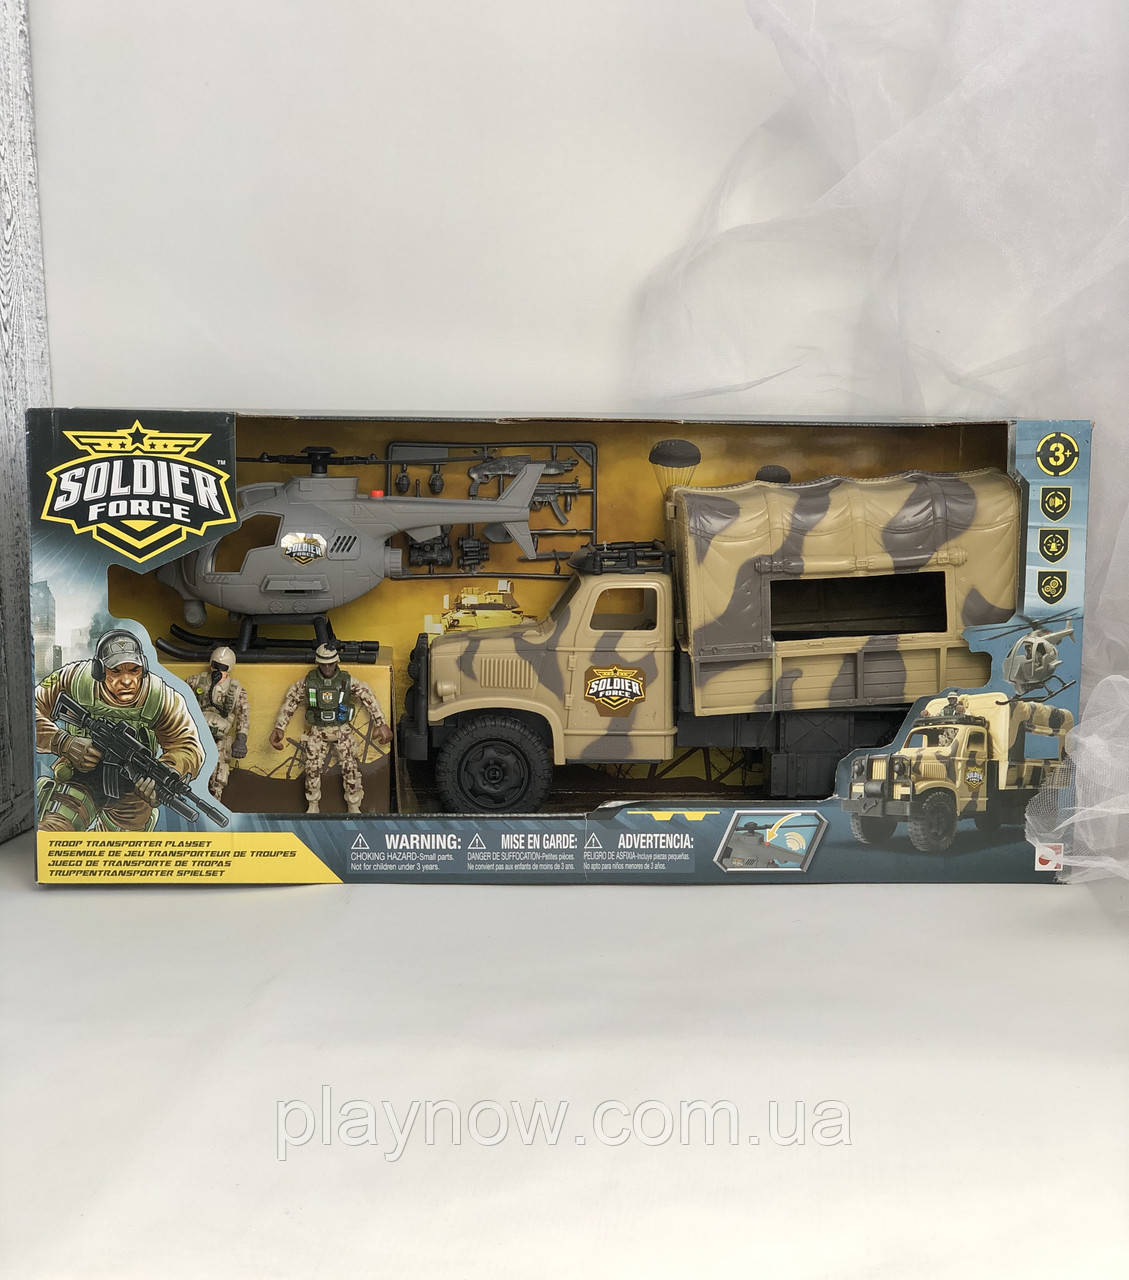 Супер цена! Детский игровой набор Chap Mei Солдаты Trooper Truck, с военной техникой. Солдатики